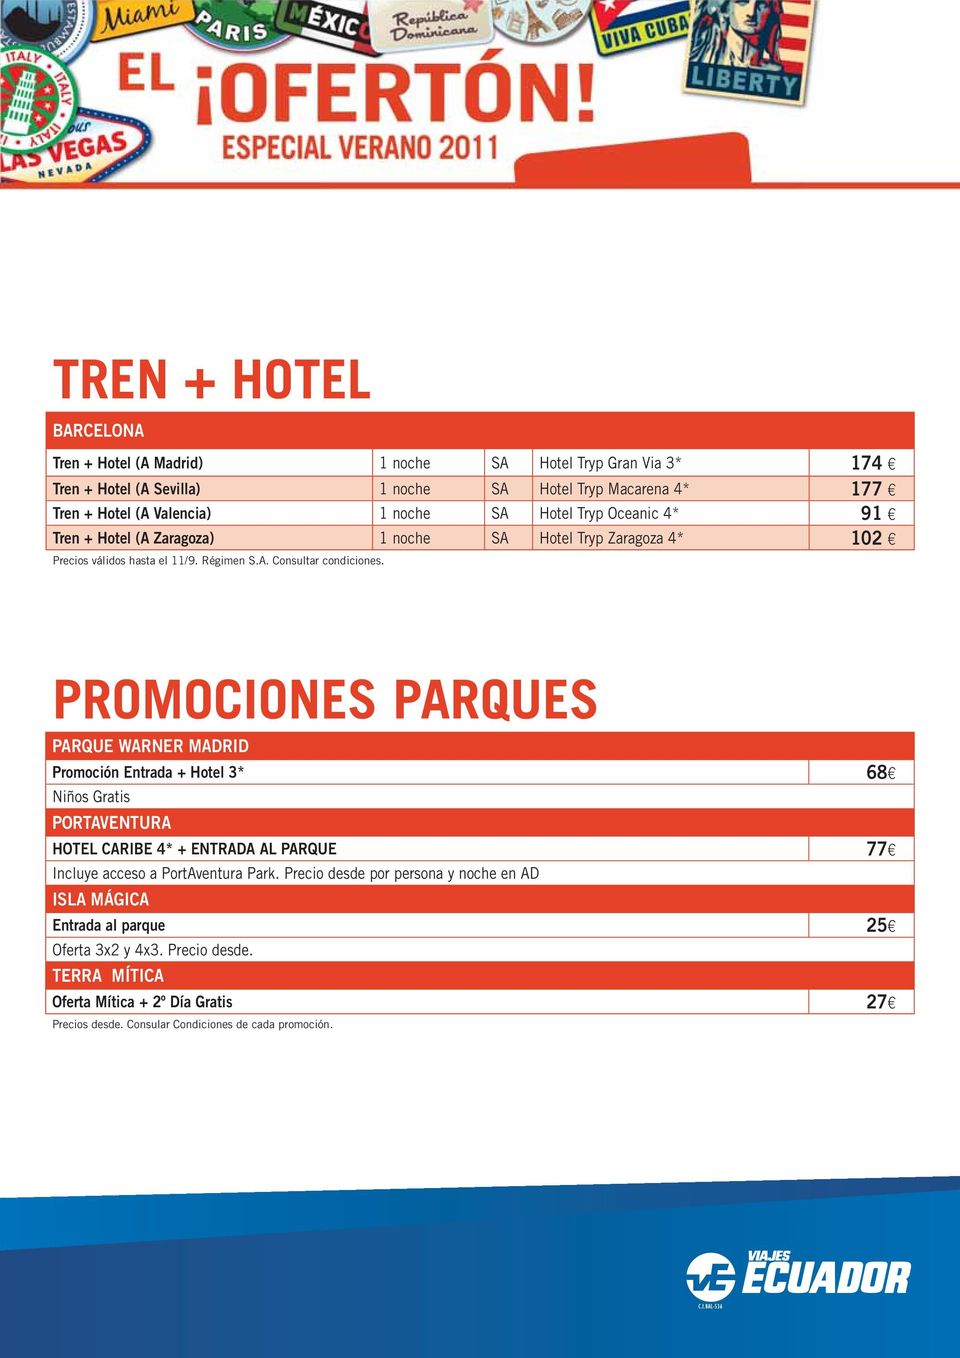 PROMOCIONES PARQUES PARQUE WARNER MADRID Promoción Entrada + Hotel 3* 68 Niños Gratis PORTAVENTURA HOTEL CARIBE 4* + ENTRADA AL PARQUE 77 Incluye acceso a PortAventura Park.